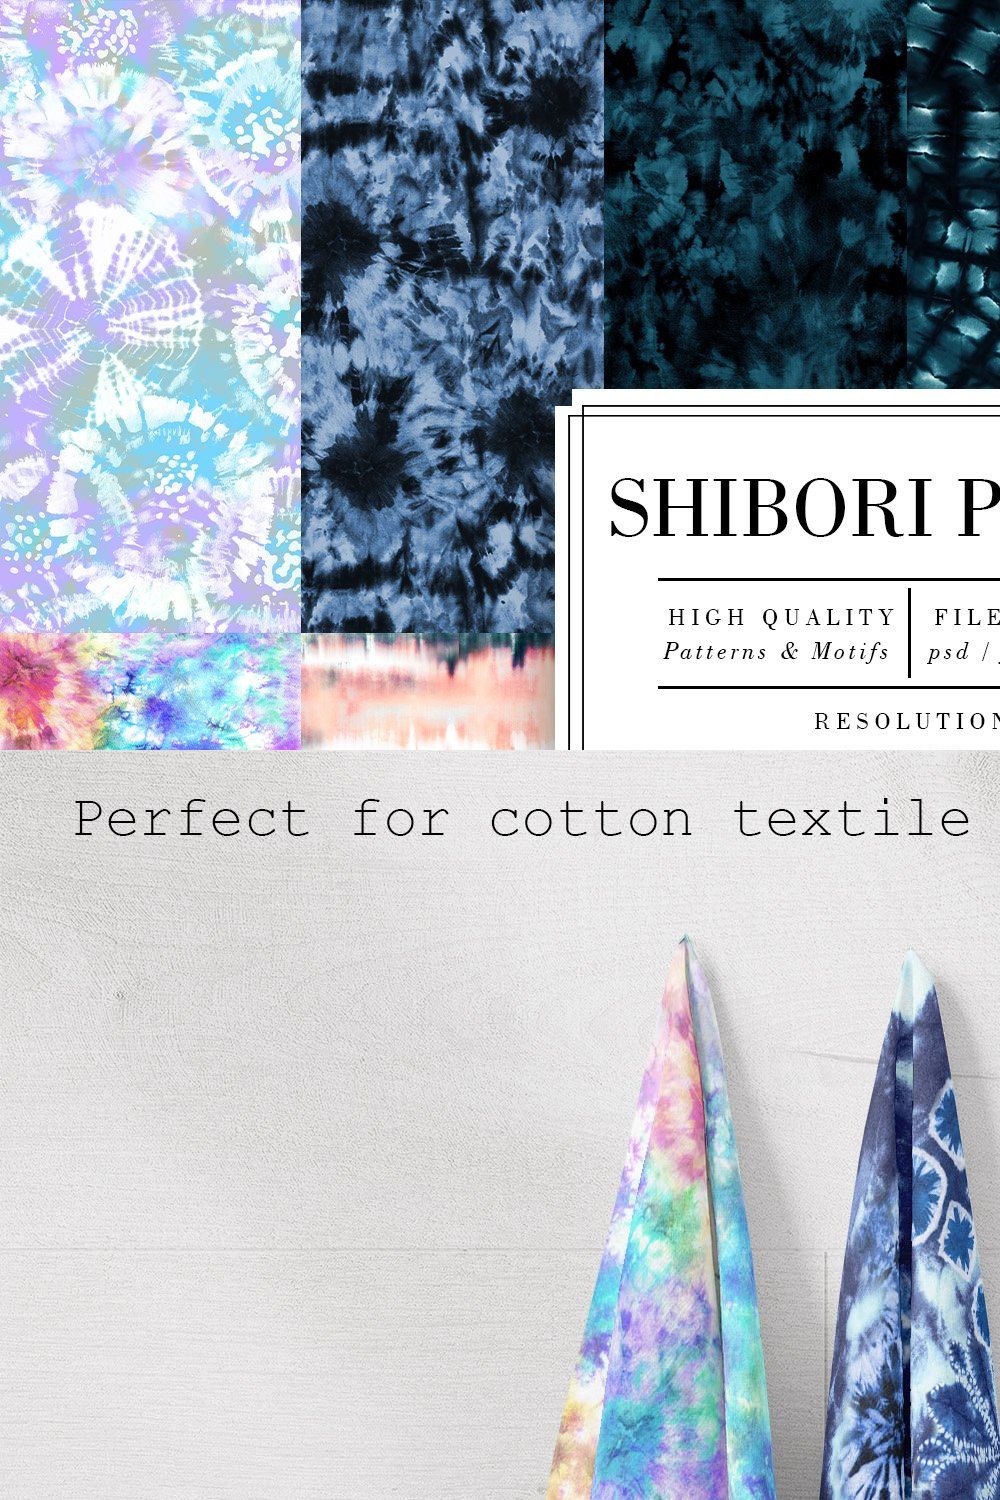 Shibori Prints pinterest preview image.